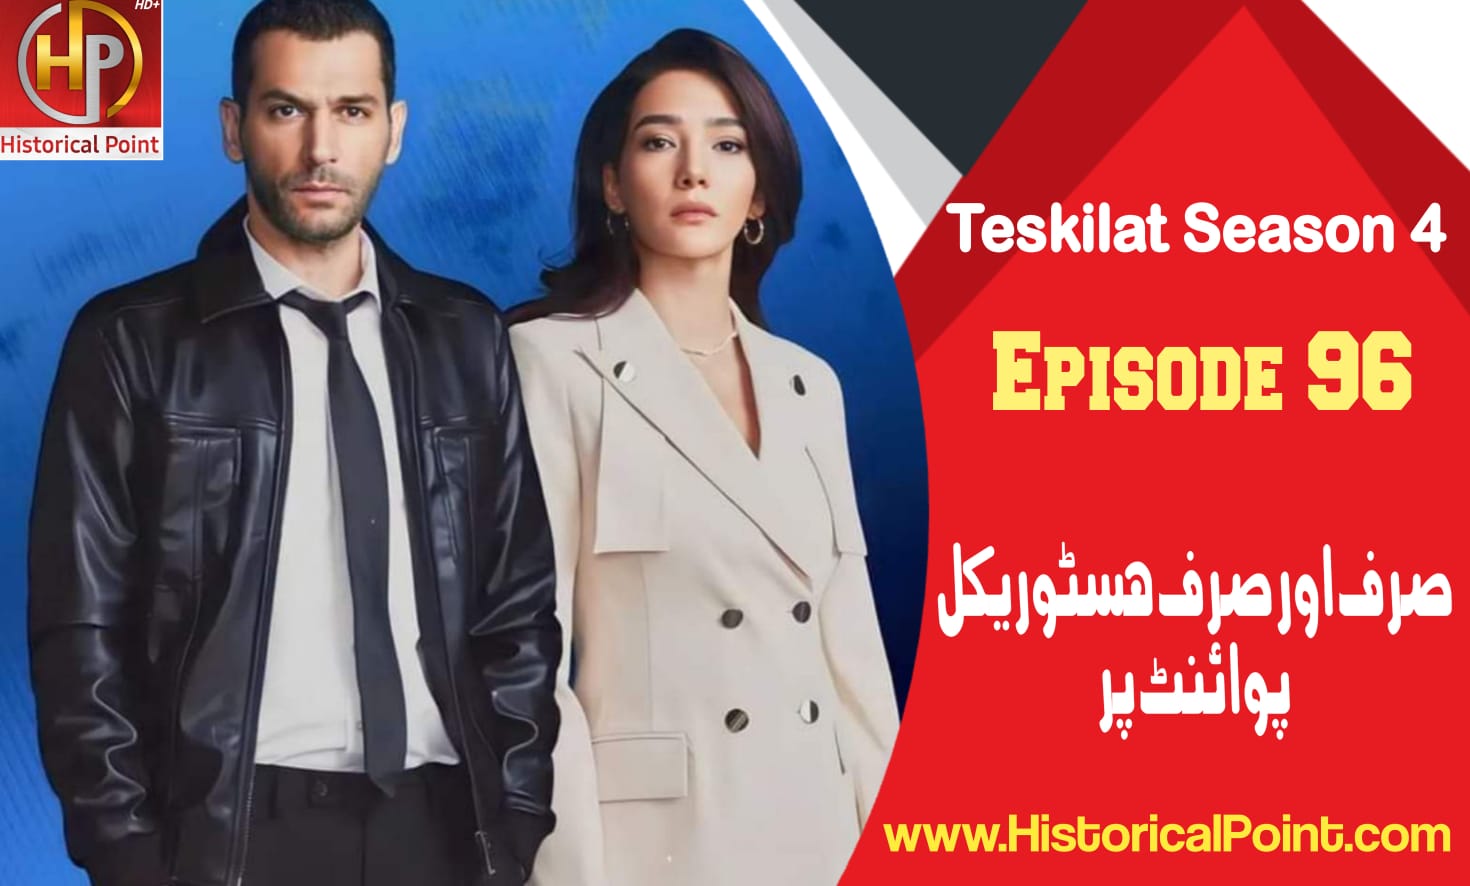 Teskilat Episode 96 in Urdu